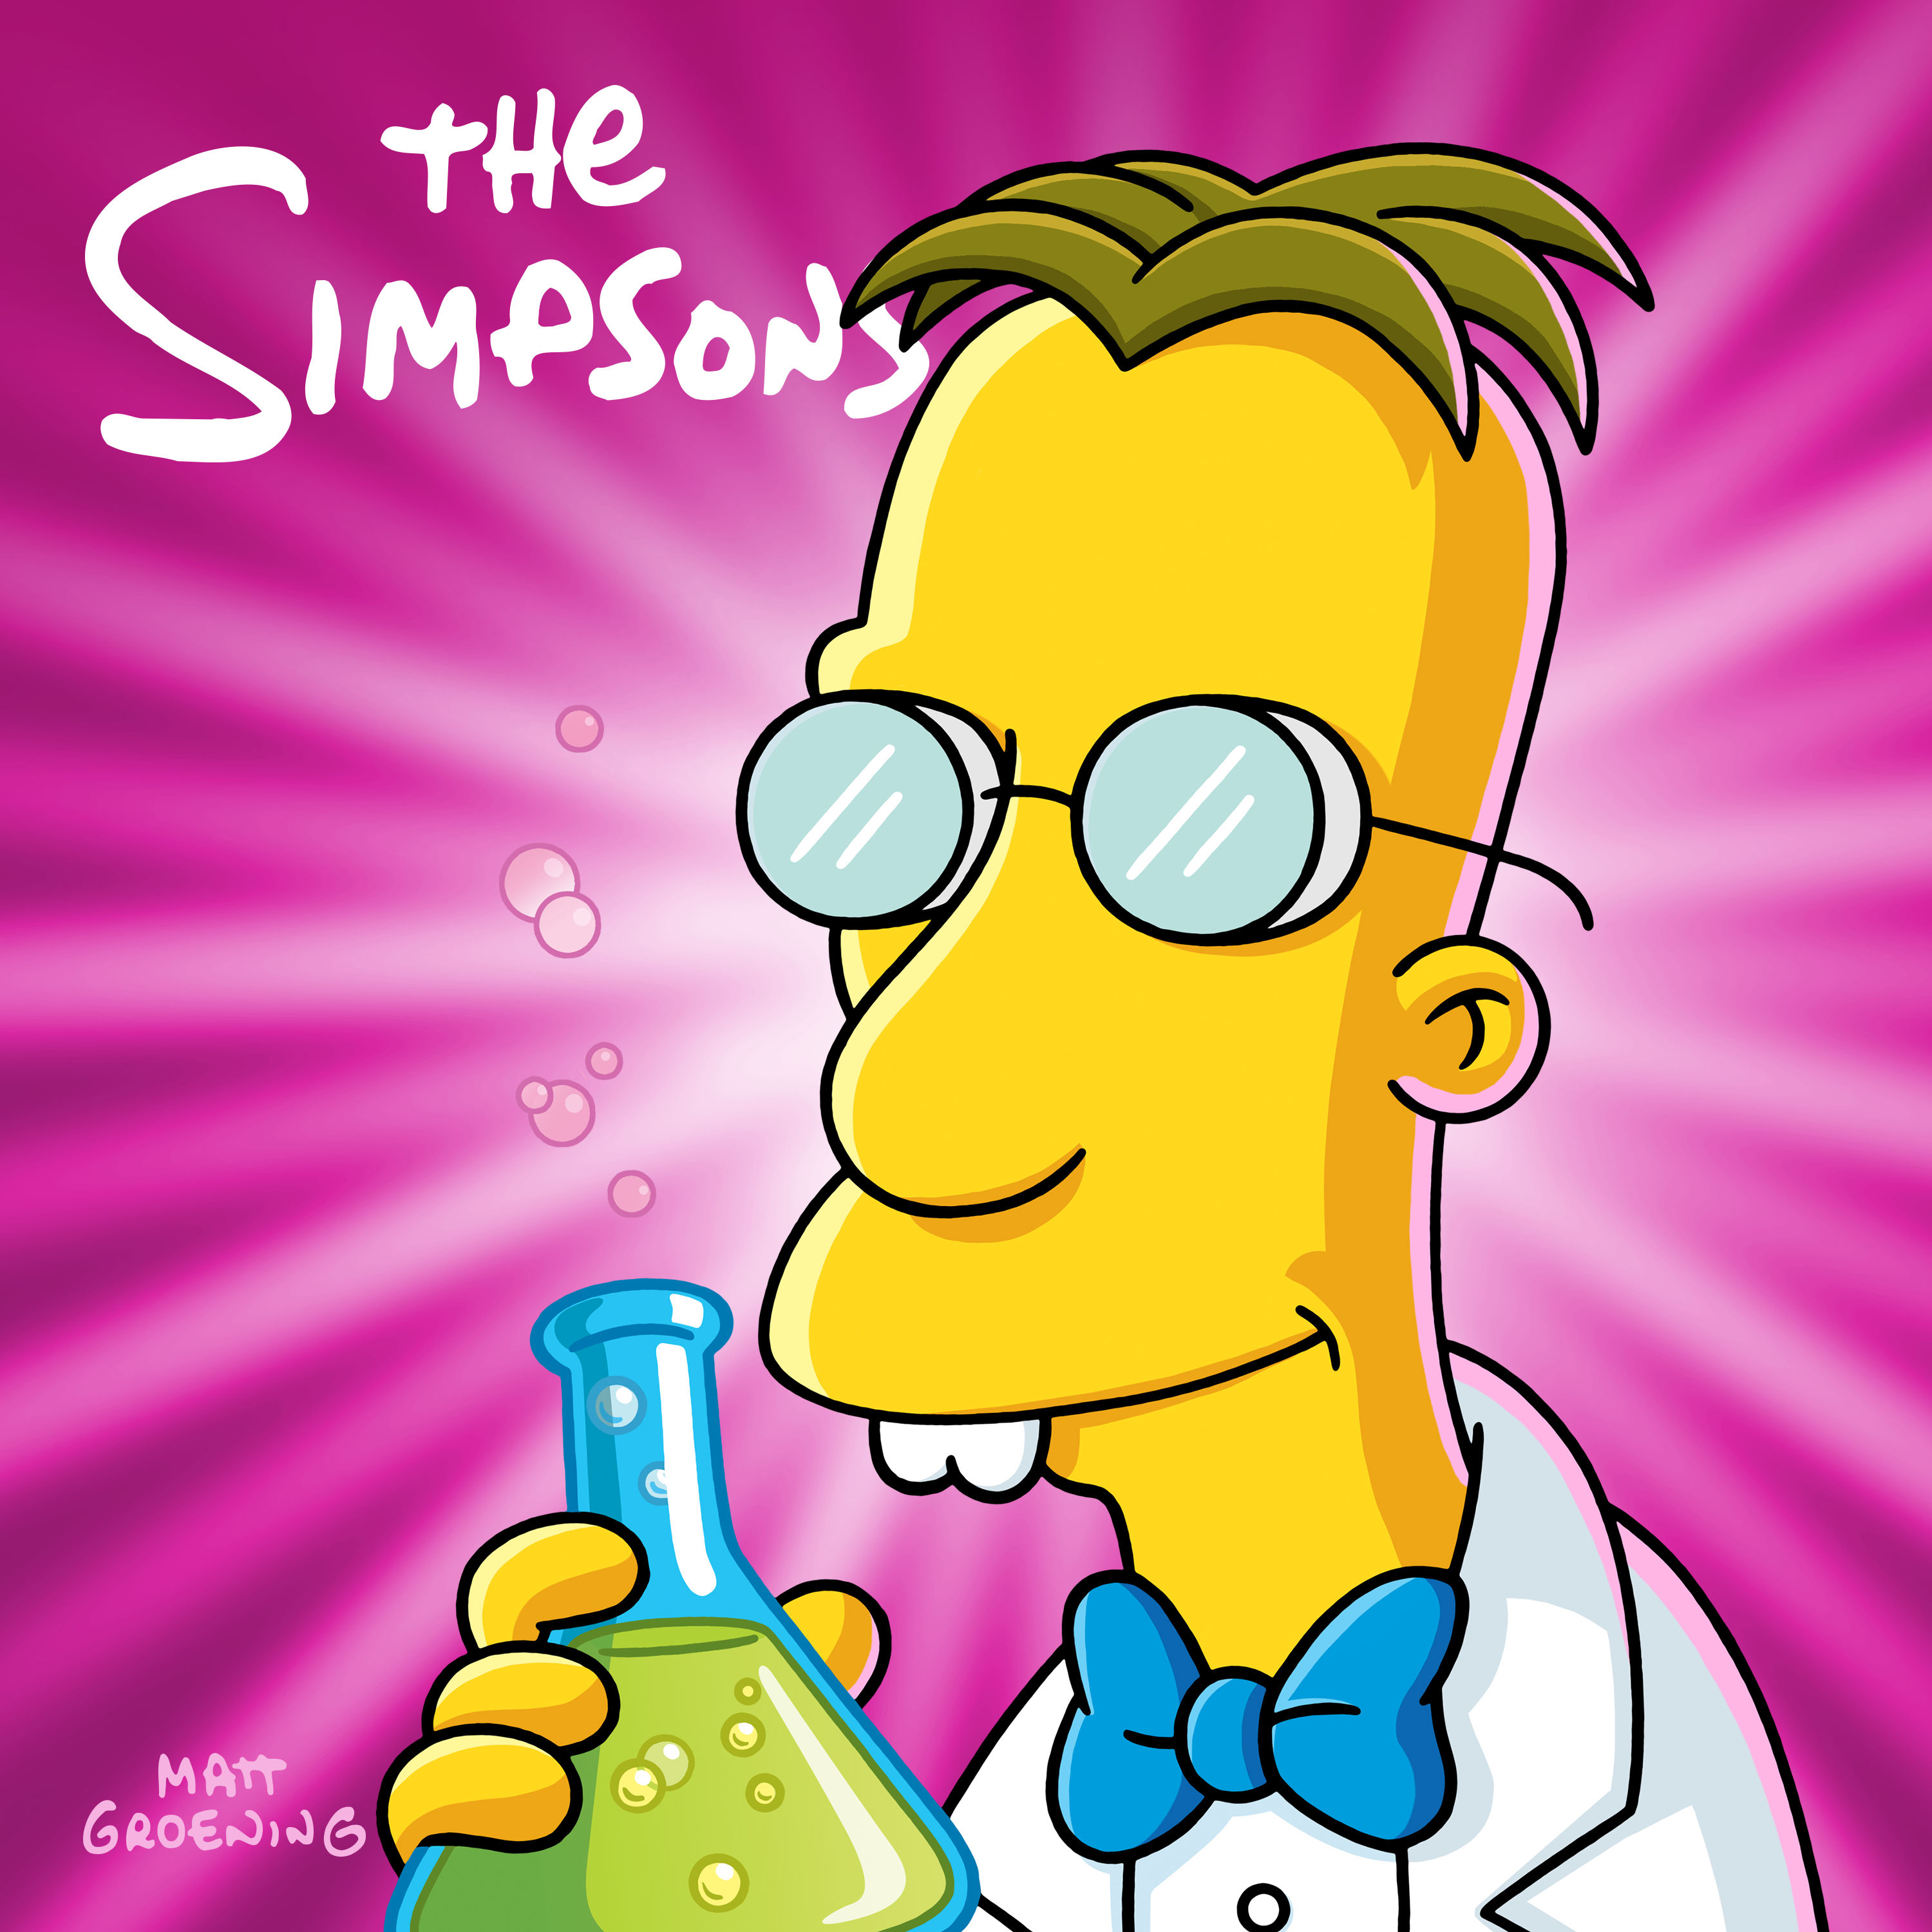 Season 3 - Wikisimpsons, the Simpsons Wiki